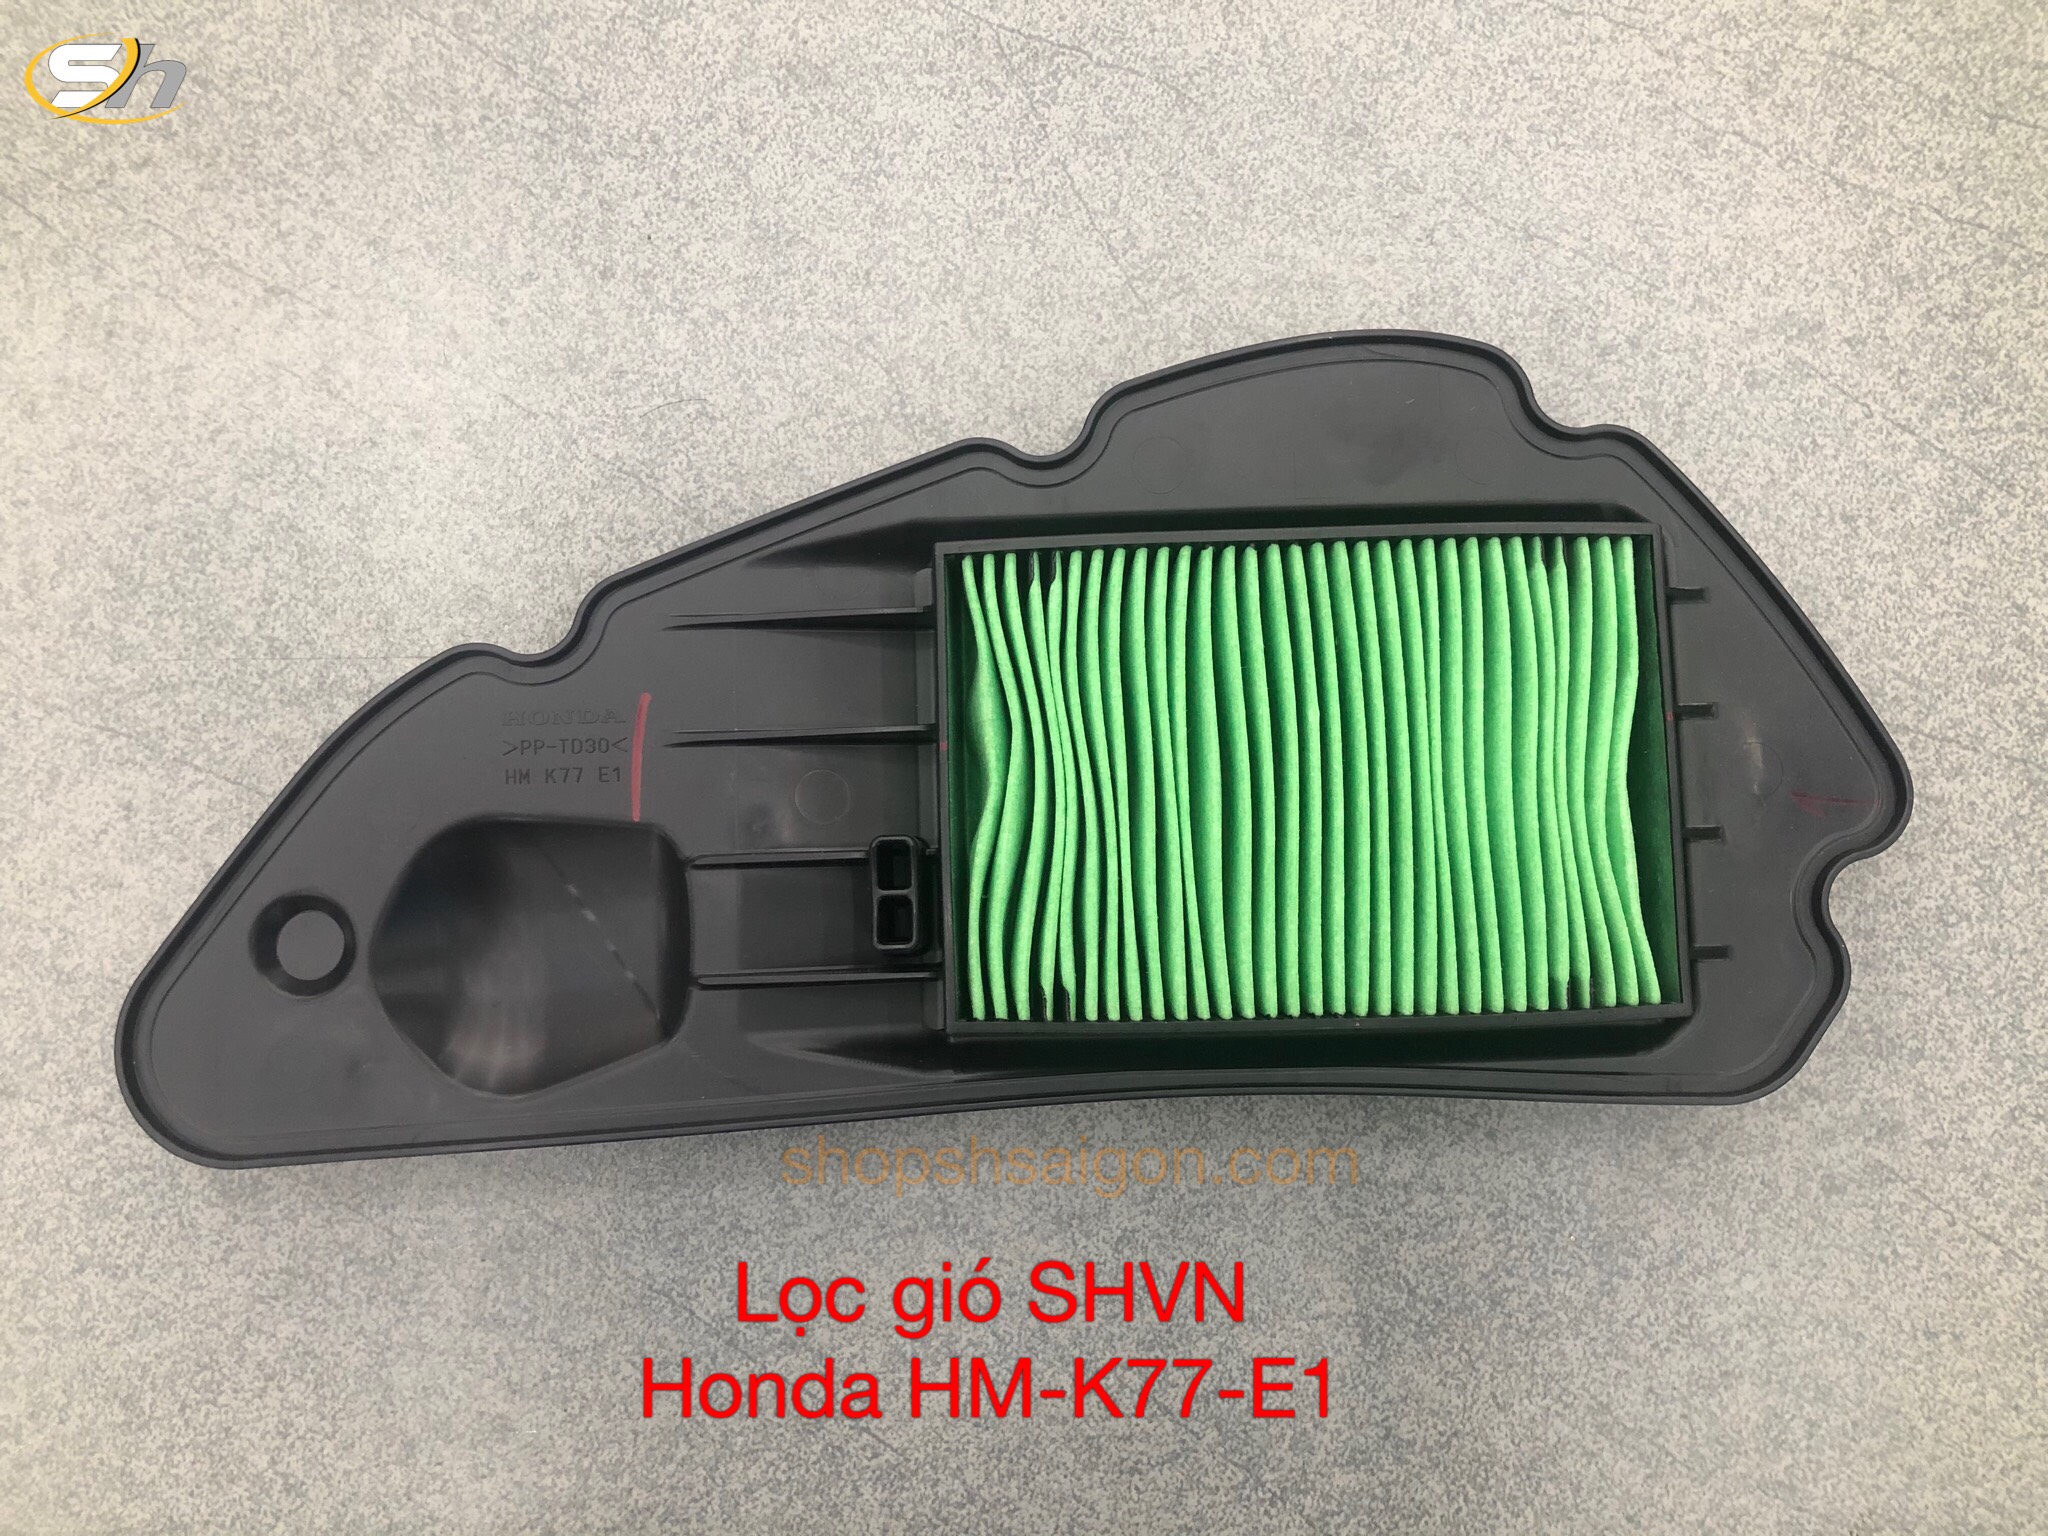 Lọc gió SHVN - Chính hãng Honda HM-K77-E1 7